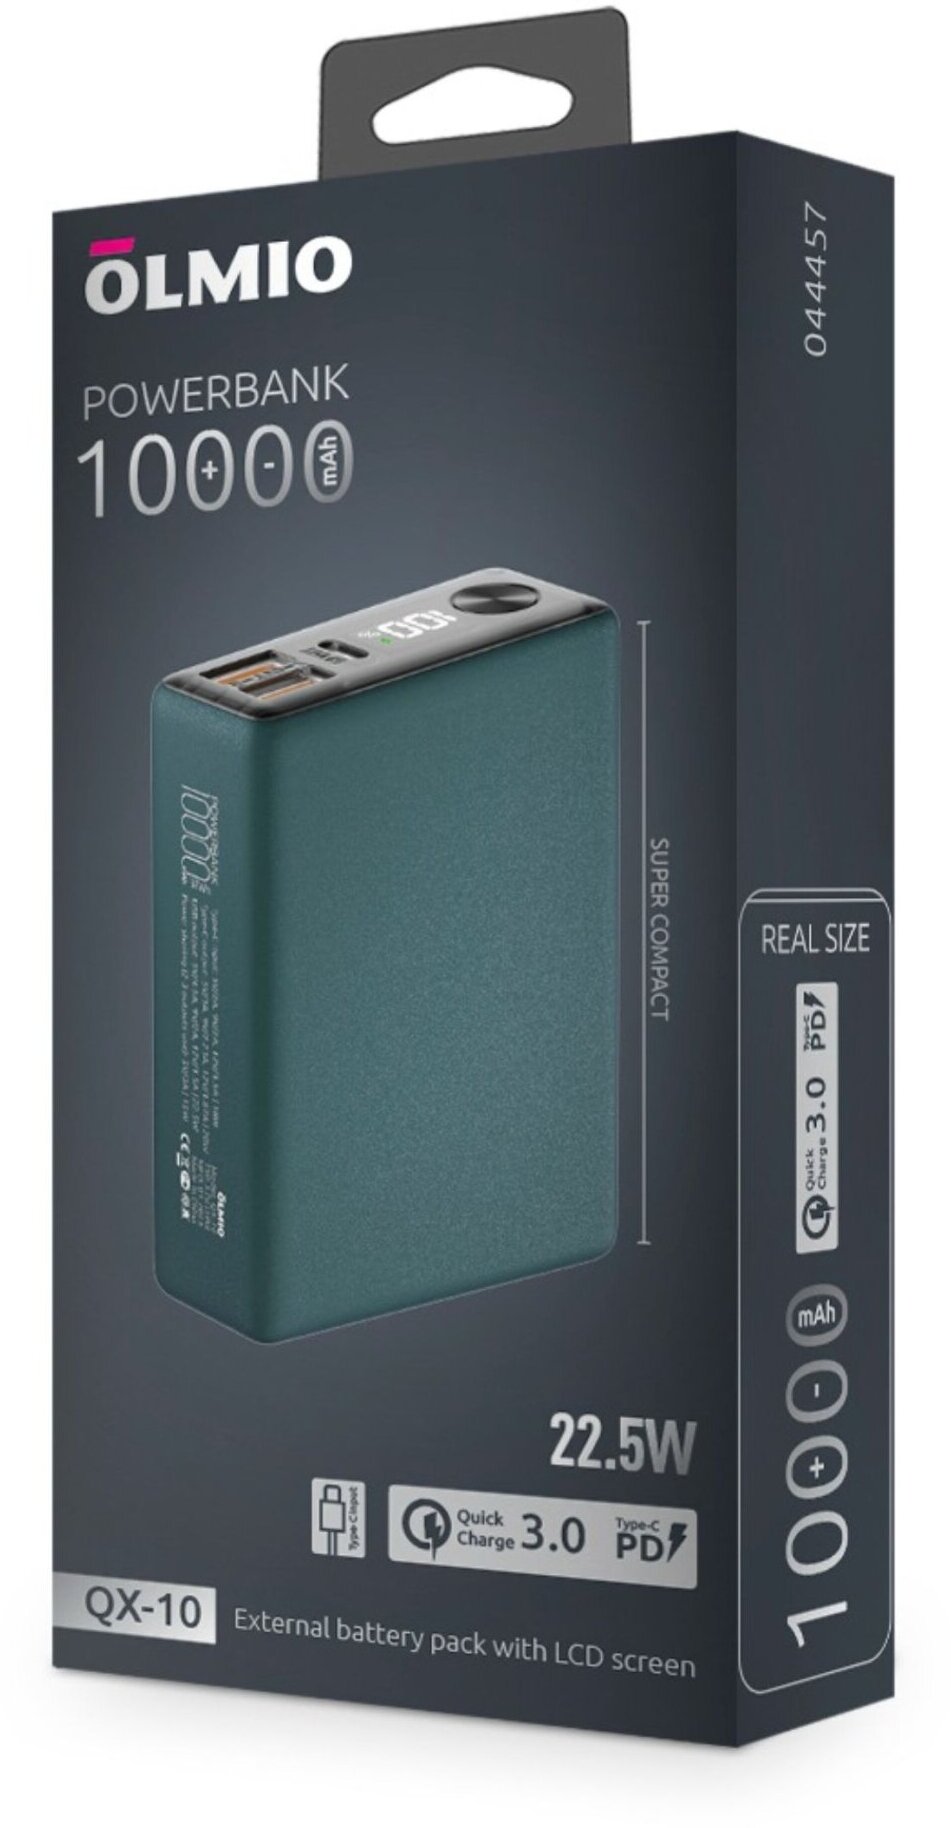 Портативное зарядное устройство Olmio QX-10 10000mAh 22.5W PD/QC 3.0 18W Wireless темно-зеленый